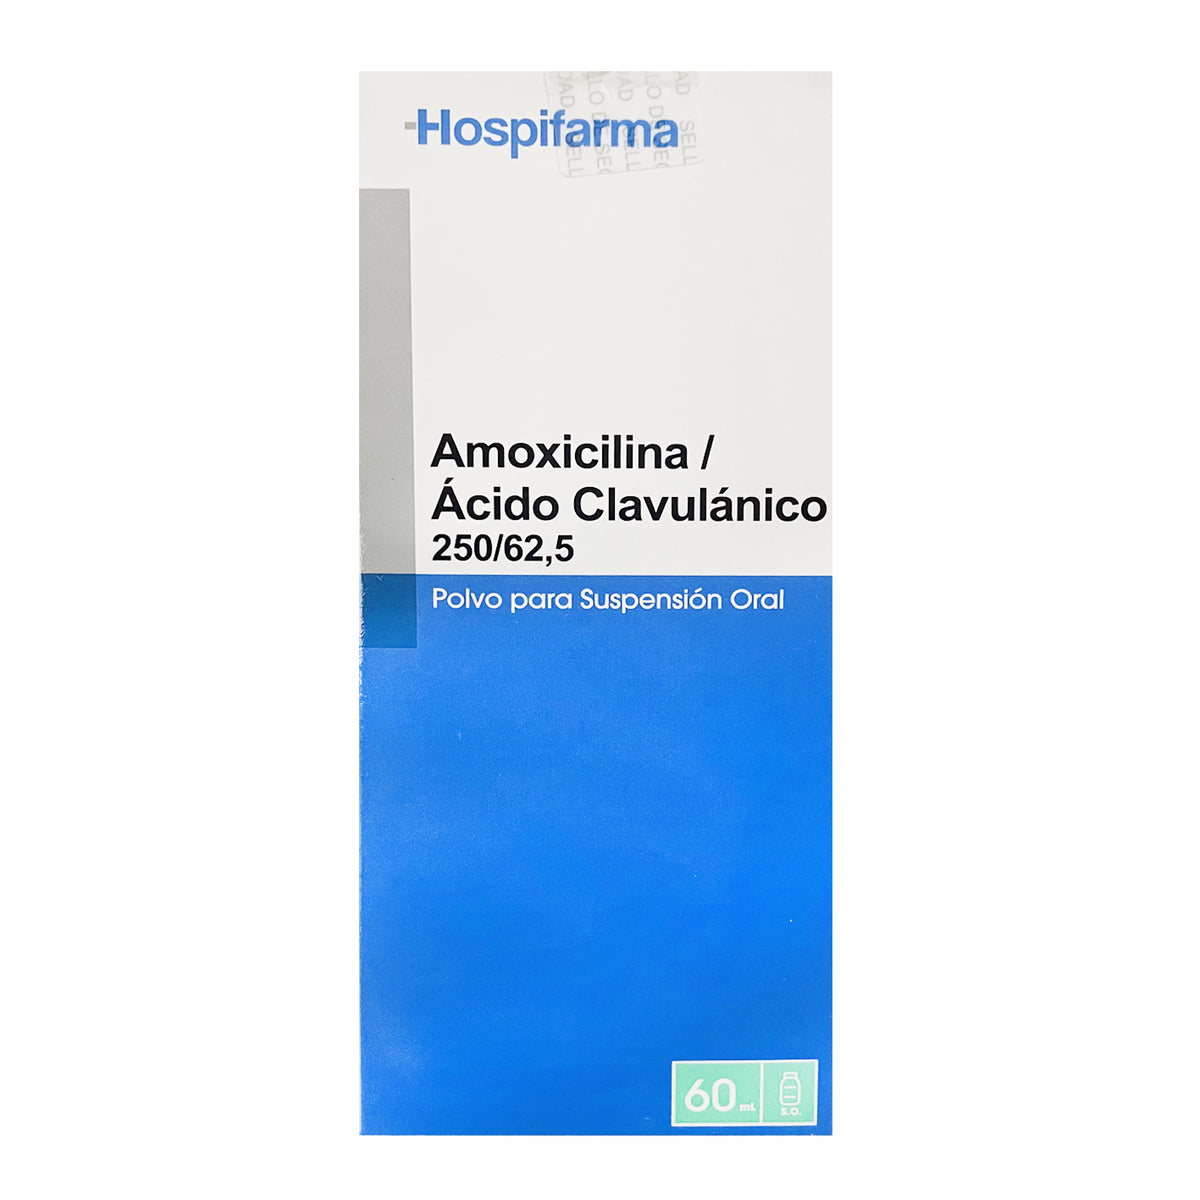 Amoxicilina / Ácido Clavulánico 250/62,5 Polvo para Suspensión Oral